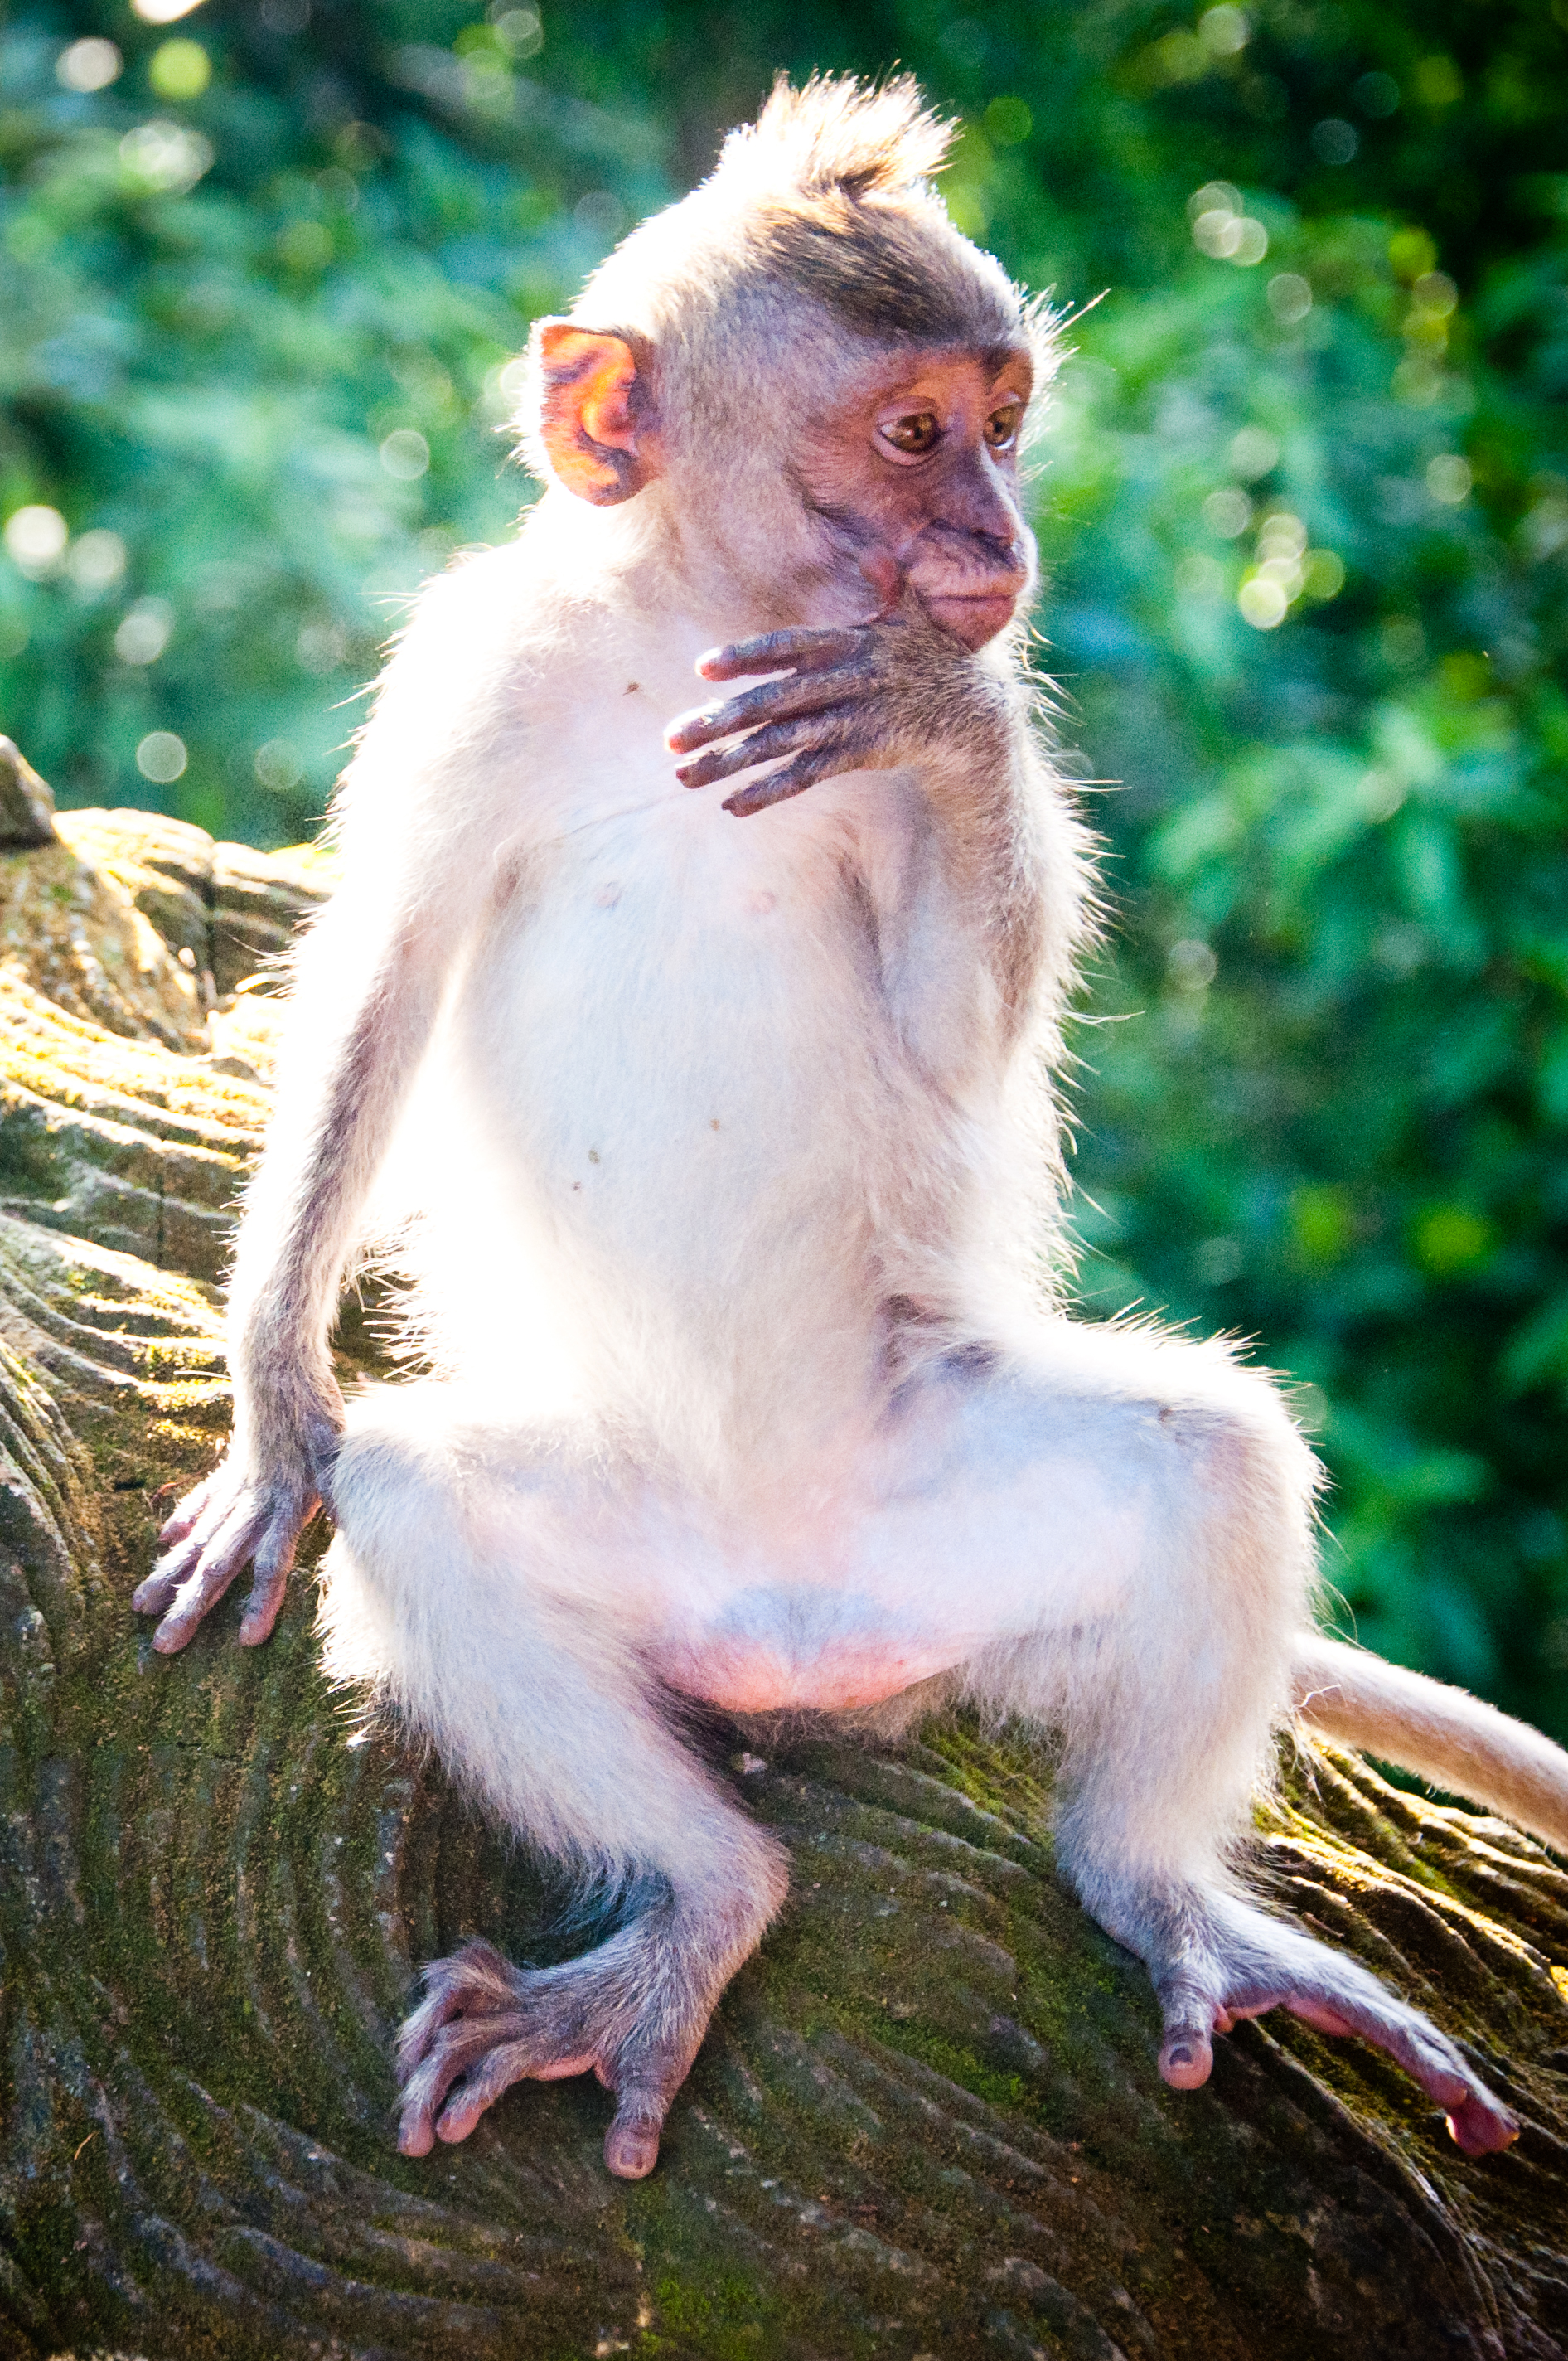 Baby monkey, Ancestor, Photo, Image, Infant, HQ Photo